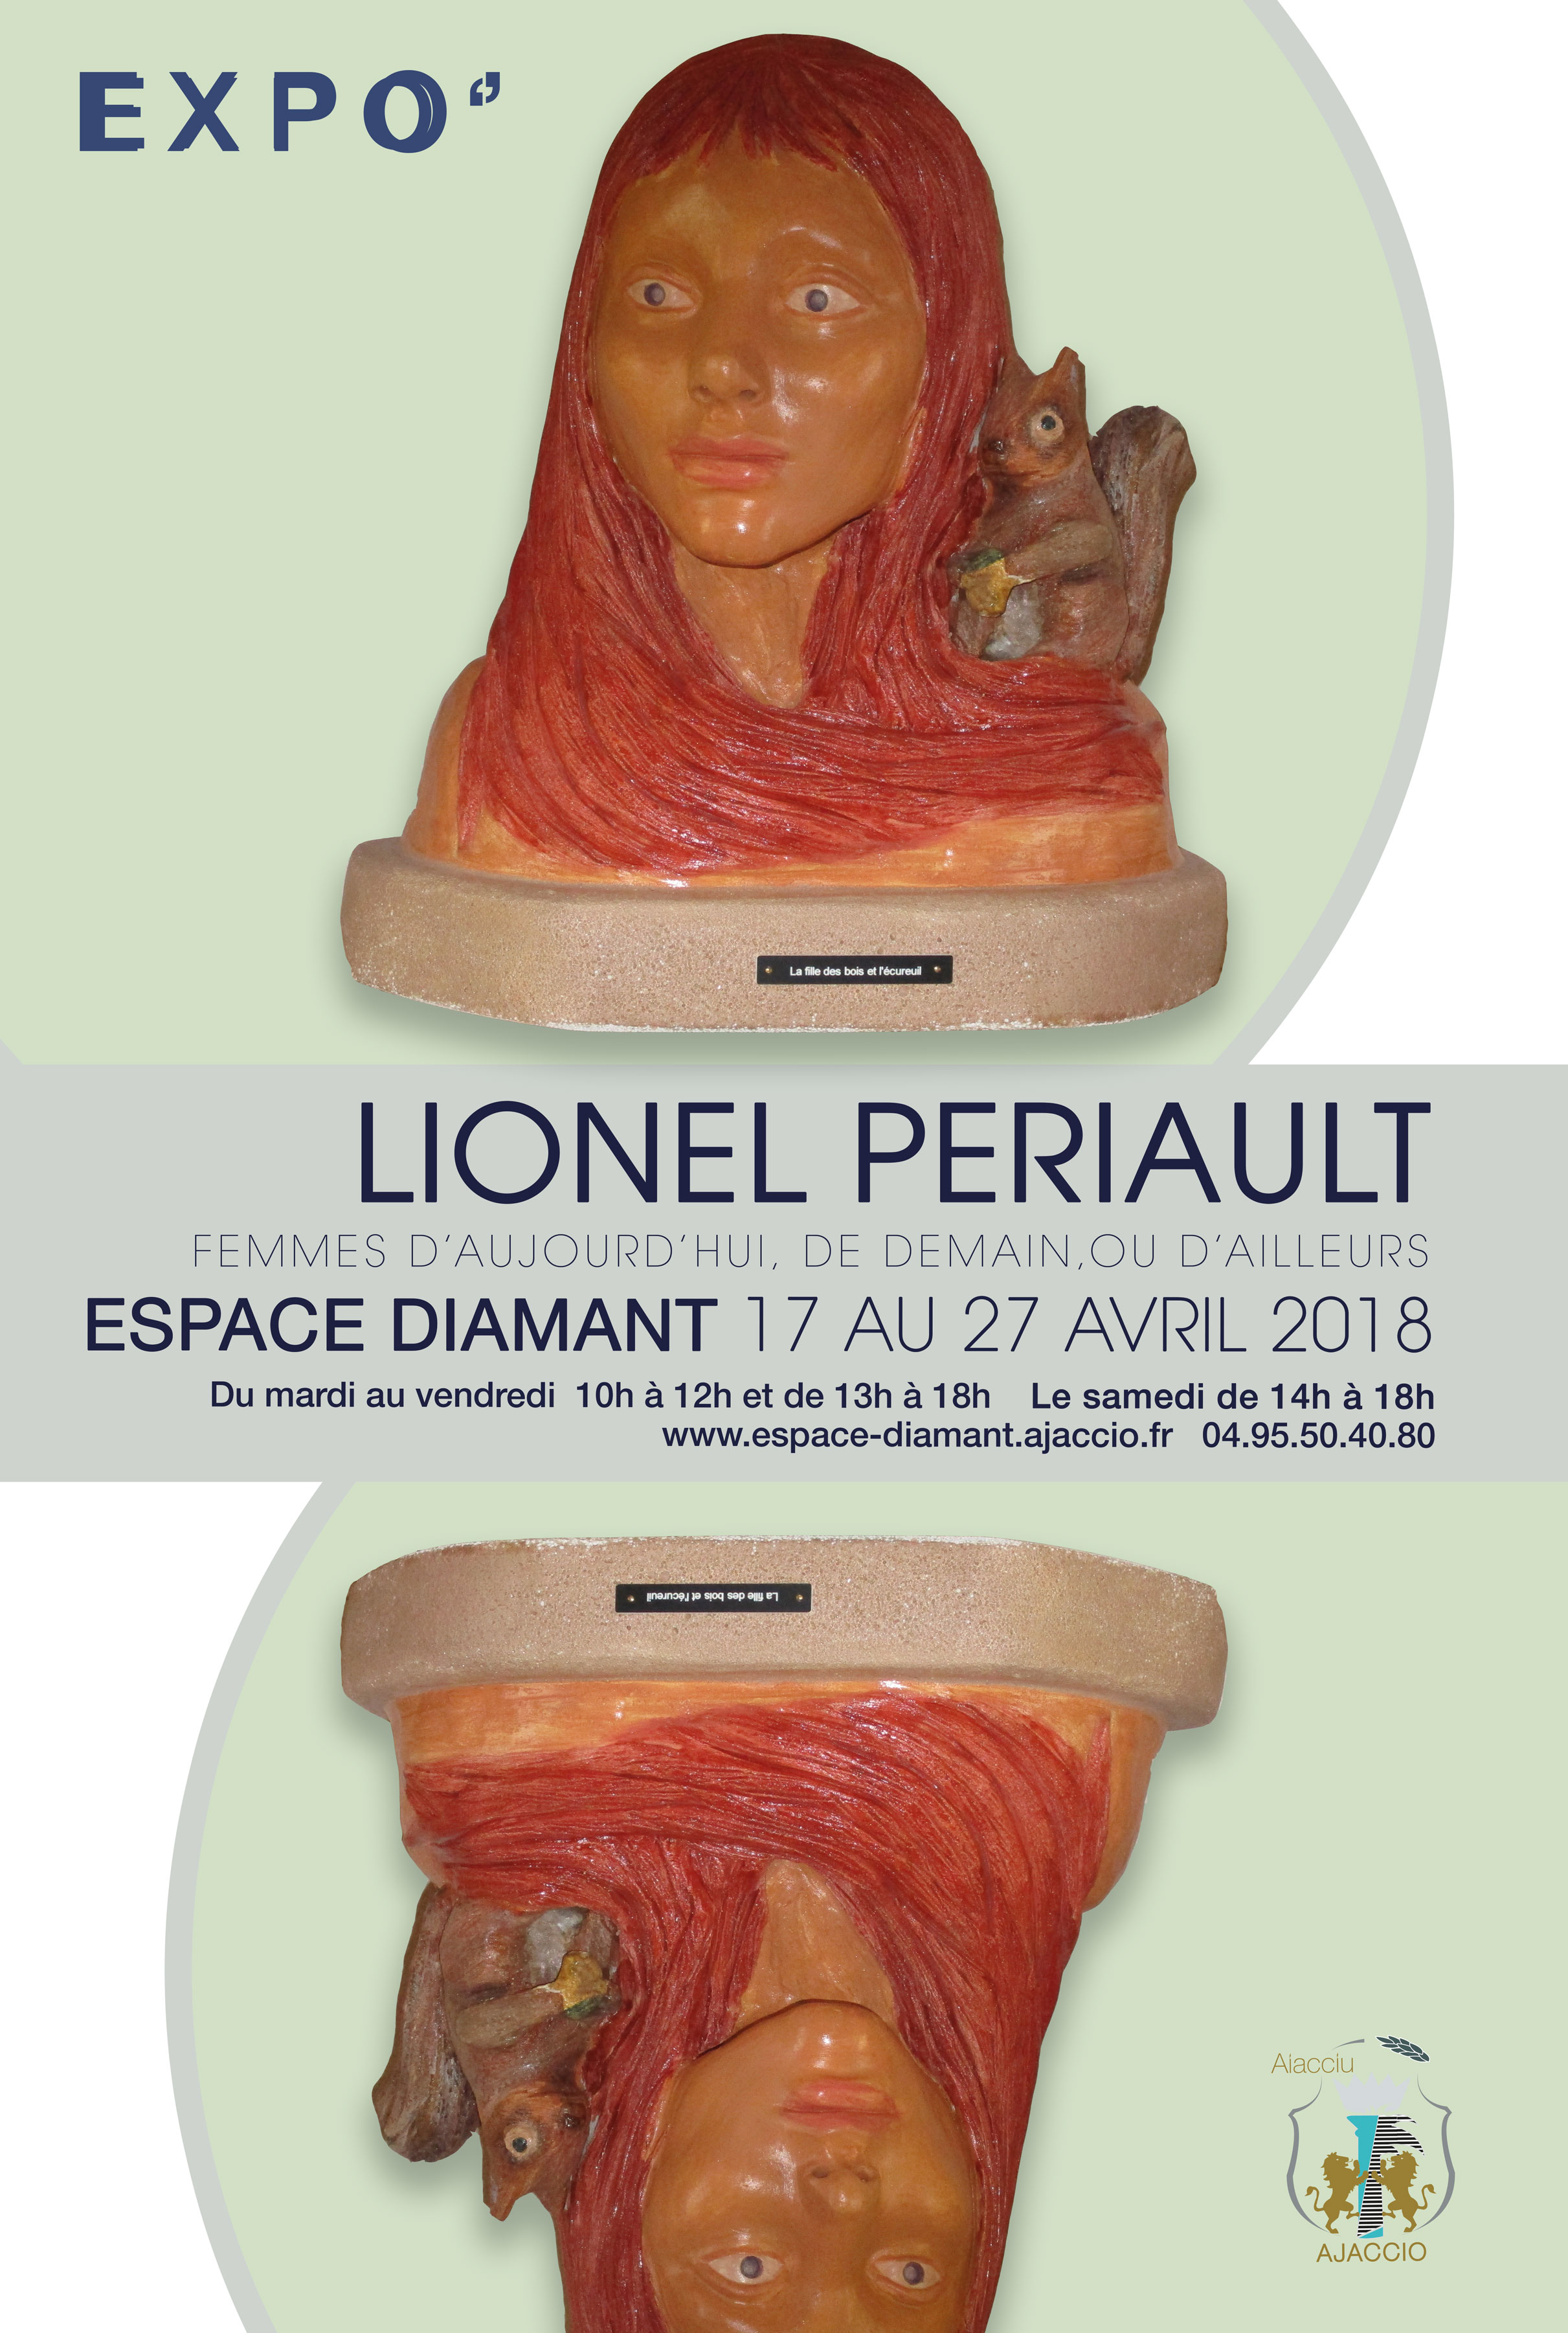 Exposition FEMMES D'AUJOURD'HUI, DE DEMAIN OU D'AILLEURS" - Lionel Periault